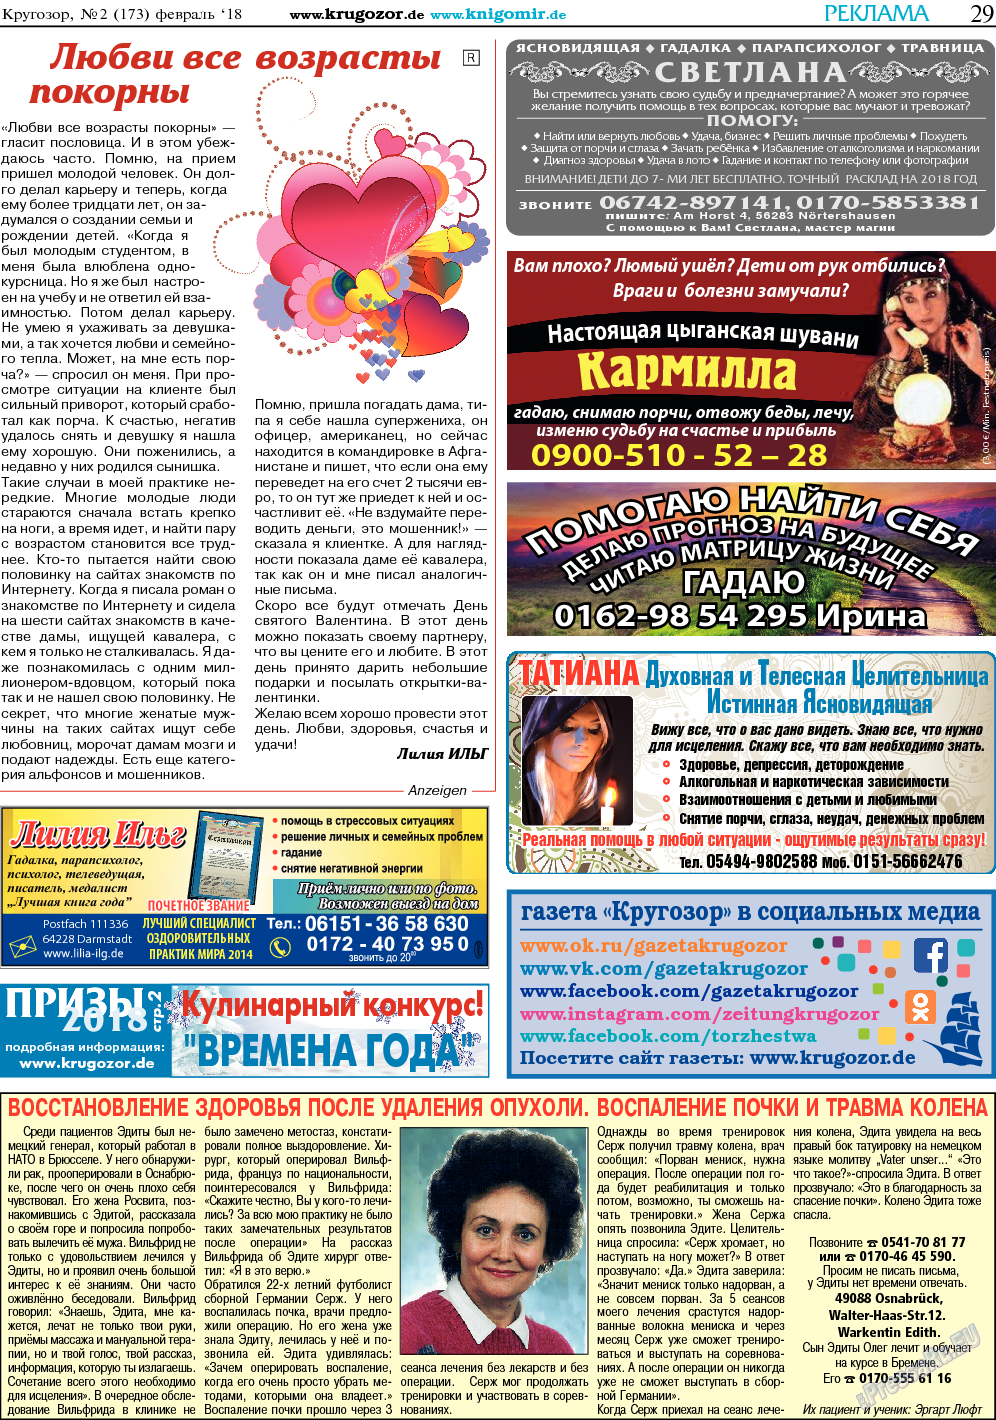 Кругозор, газета. 2018 №2 стр.29